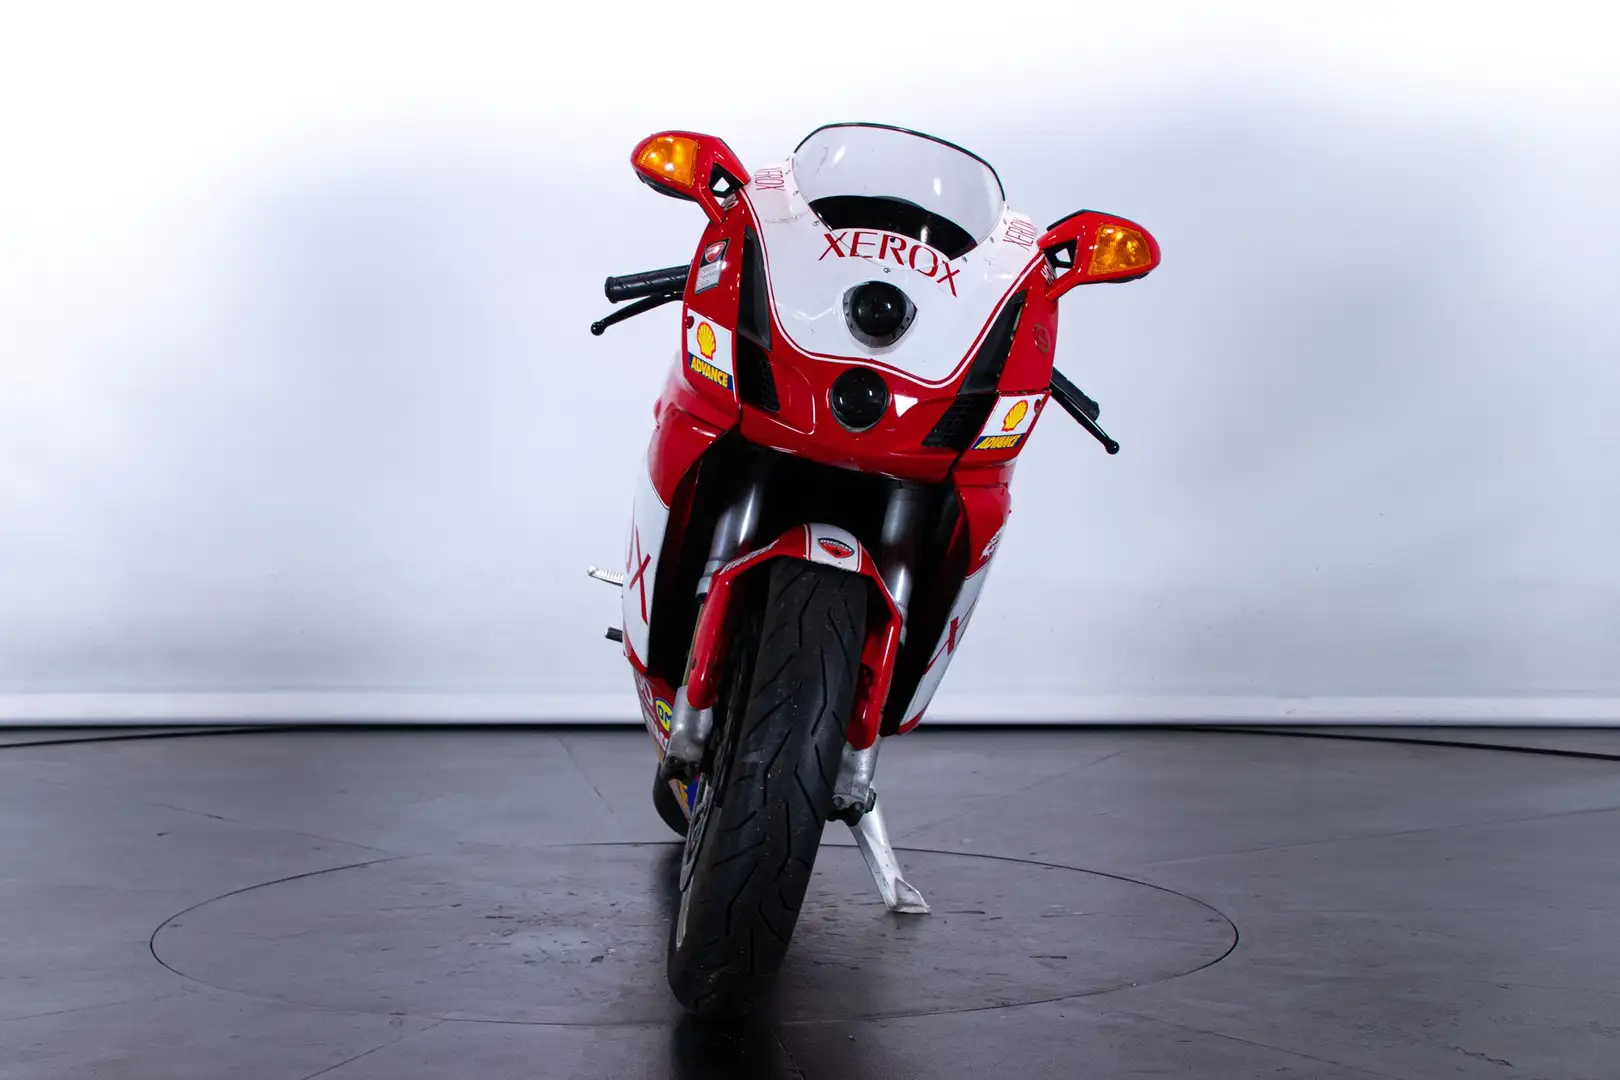 Ducati 999 Rosso - 2